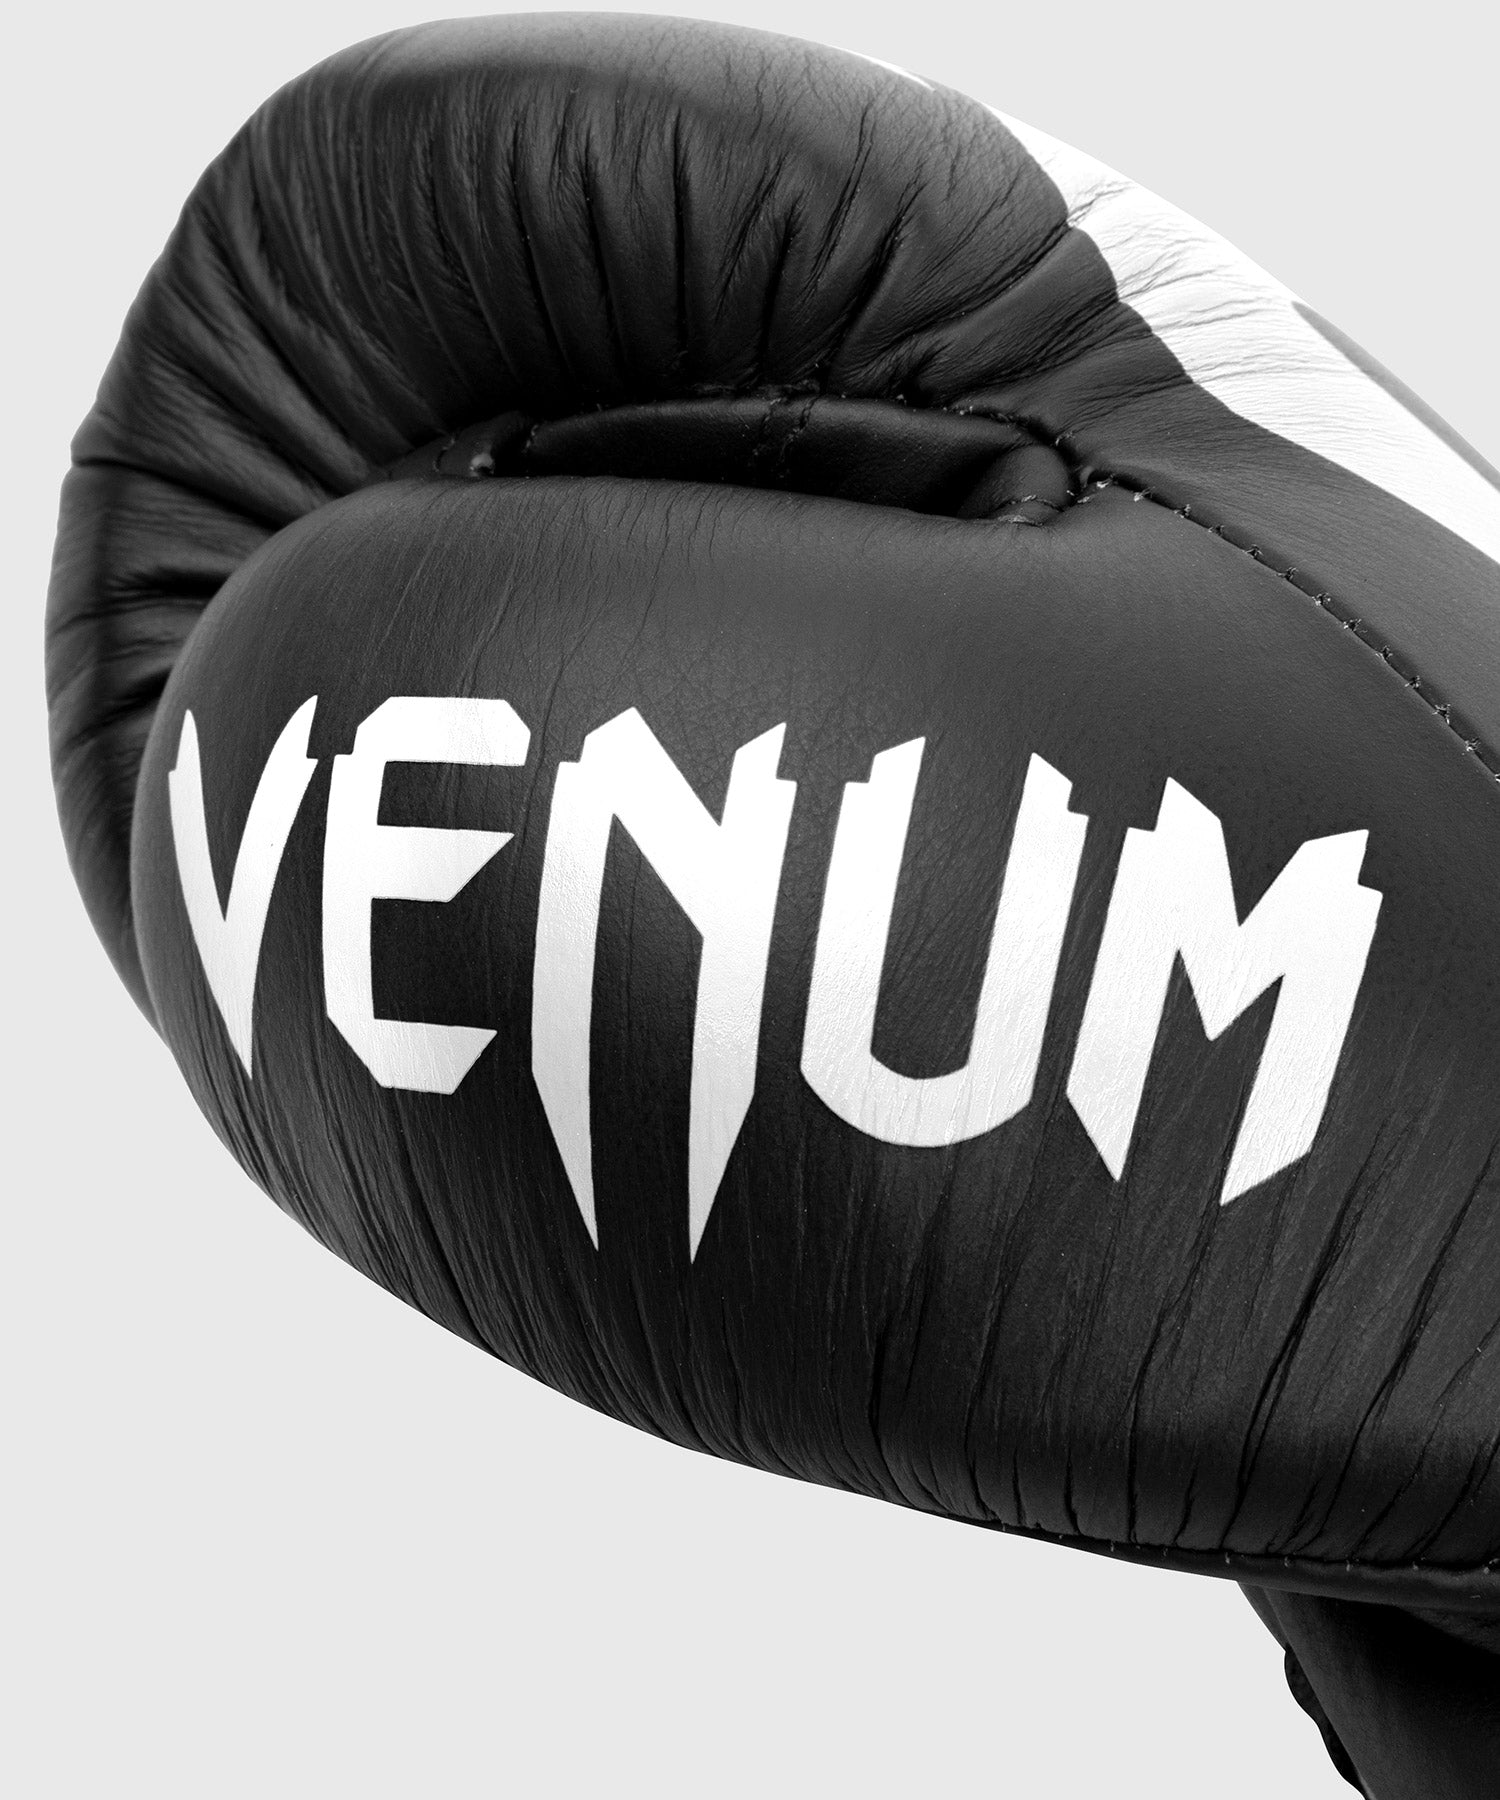 Gants de boxe pro Venum Giant 2.0 - Avec Lacets – Venum France